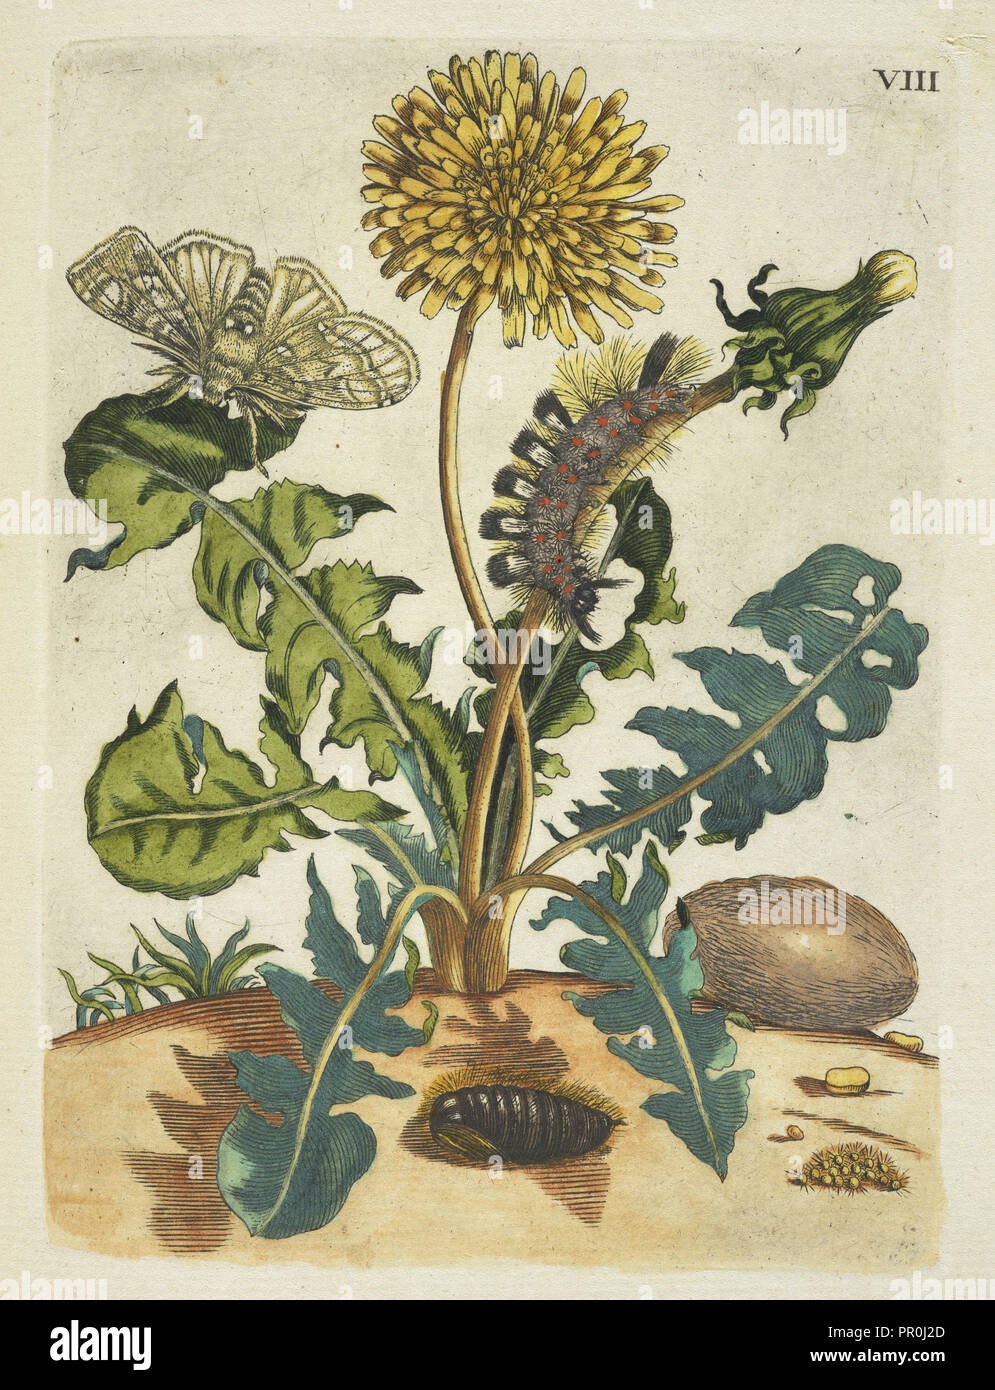 Paardebloem, De Europische insecten, Merian, Maria Sibylla, 1647-1717, Transfer print, hand-colored, 1730, Dandelion Stock Photo